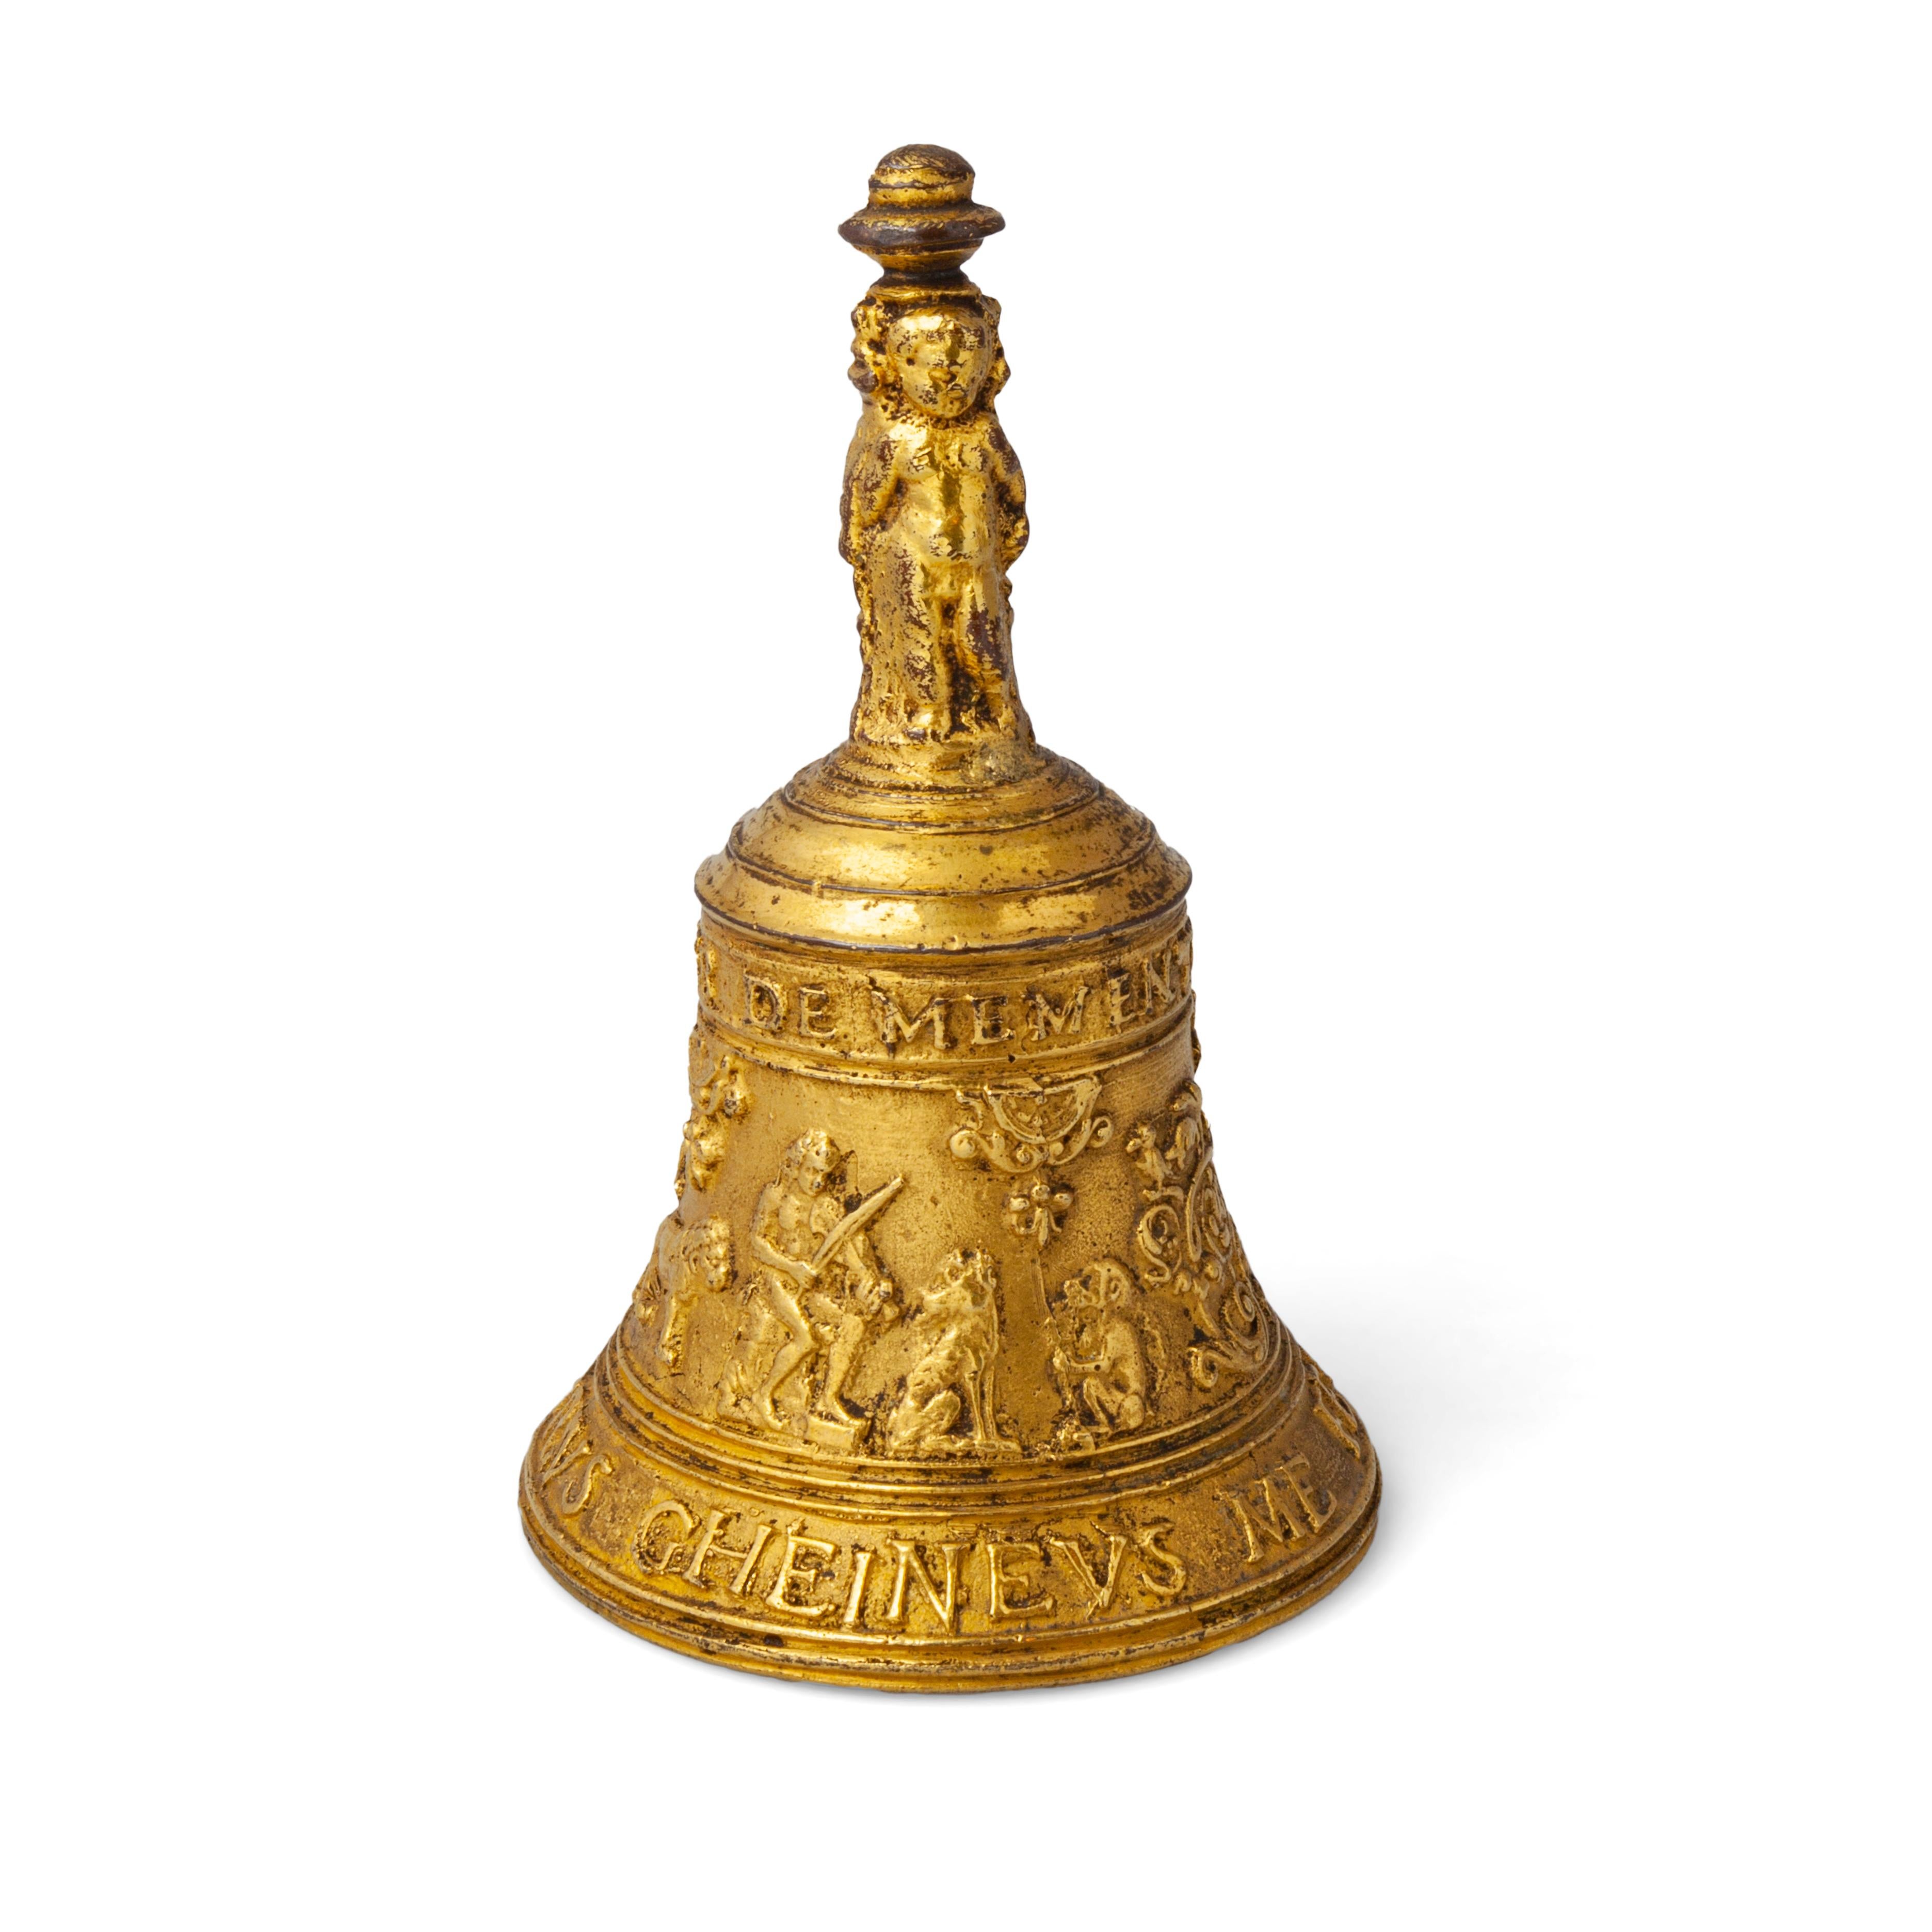 A Renaissance Bronze Table Bell - Art by Peter van den Gheyn